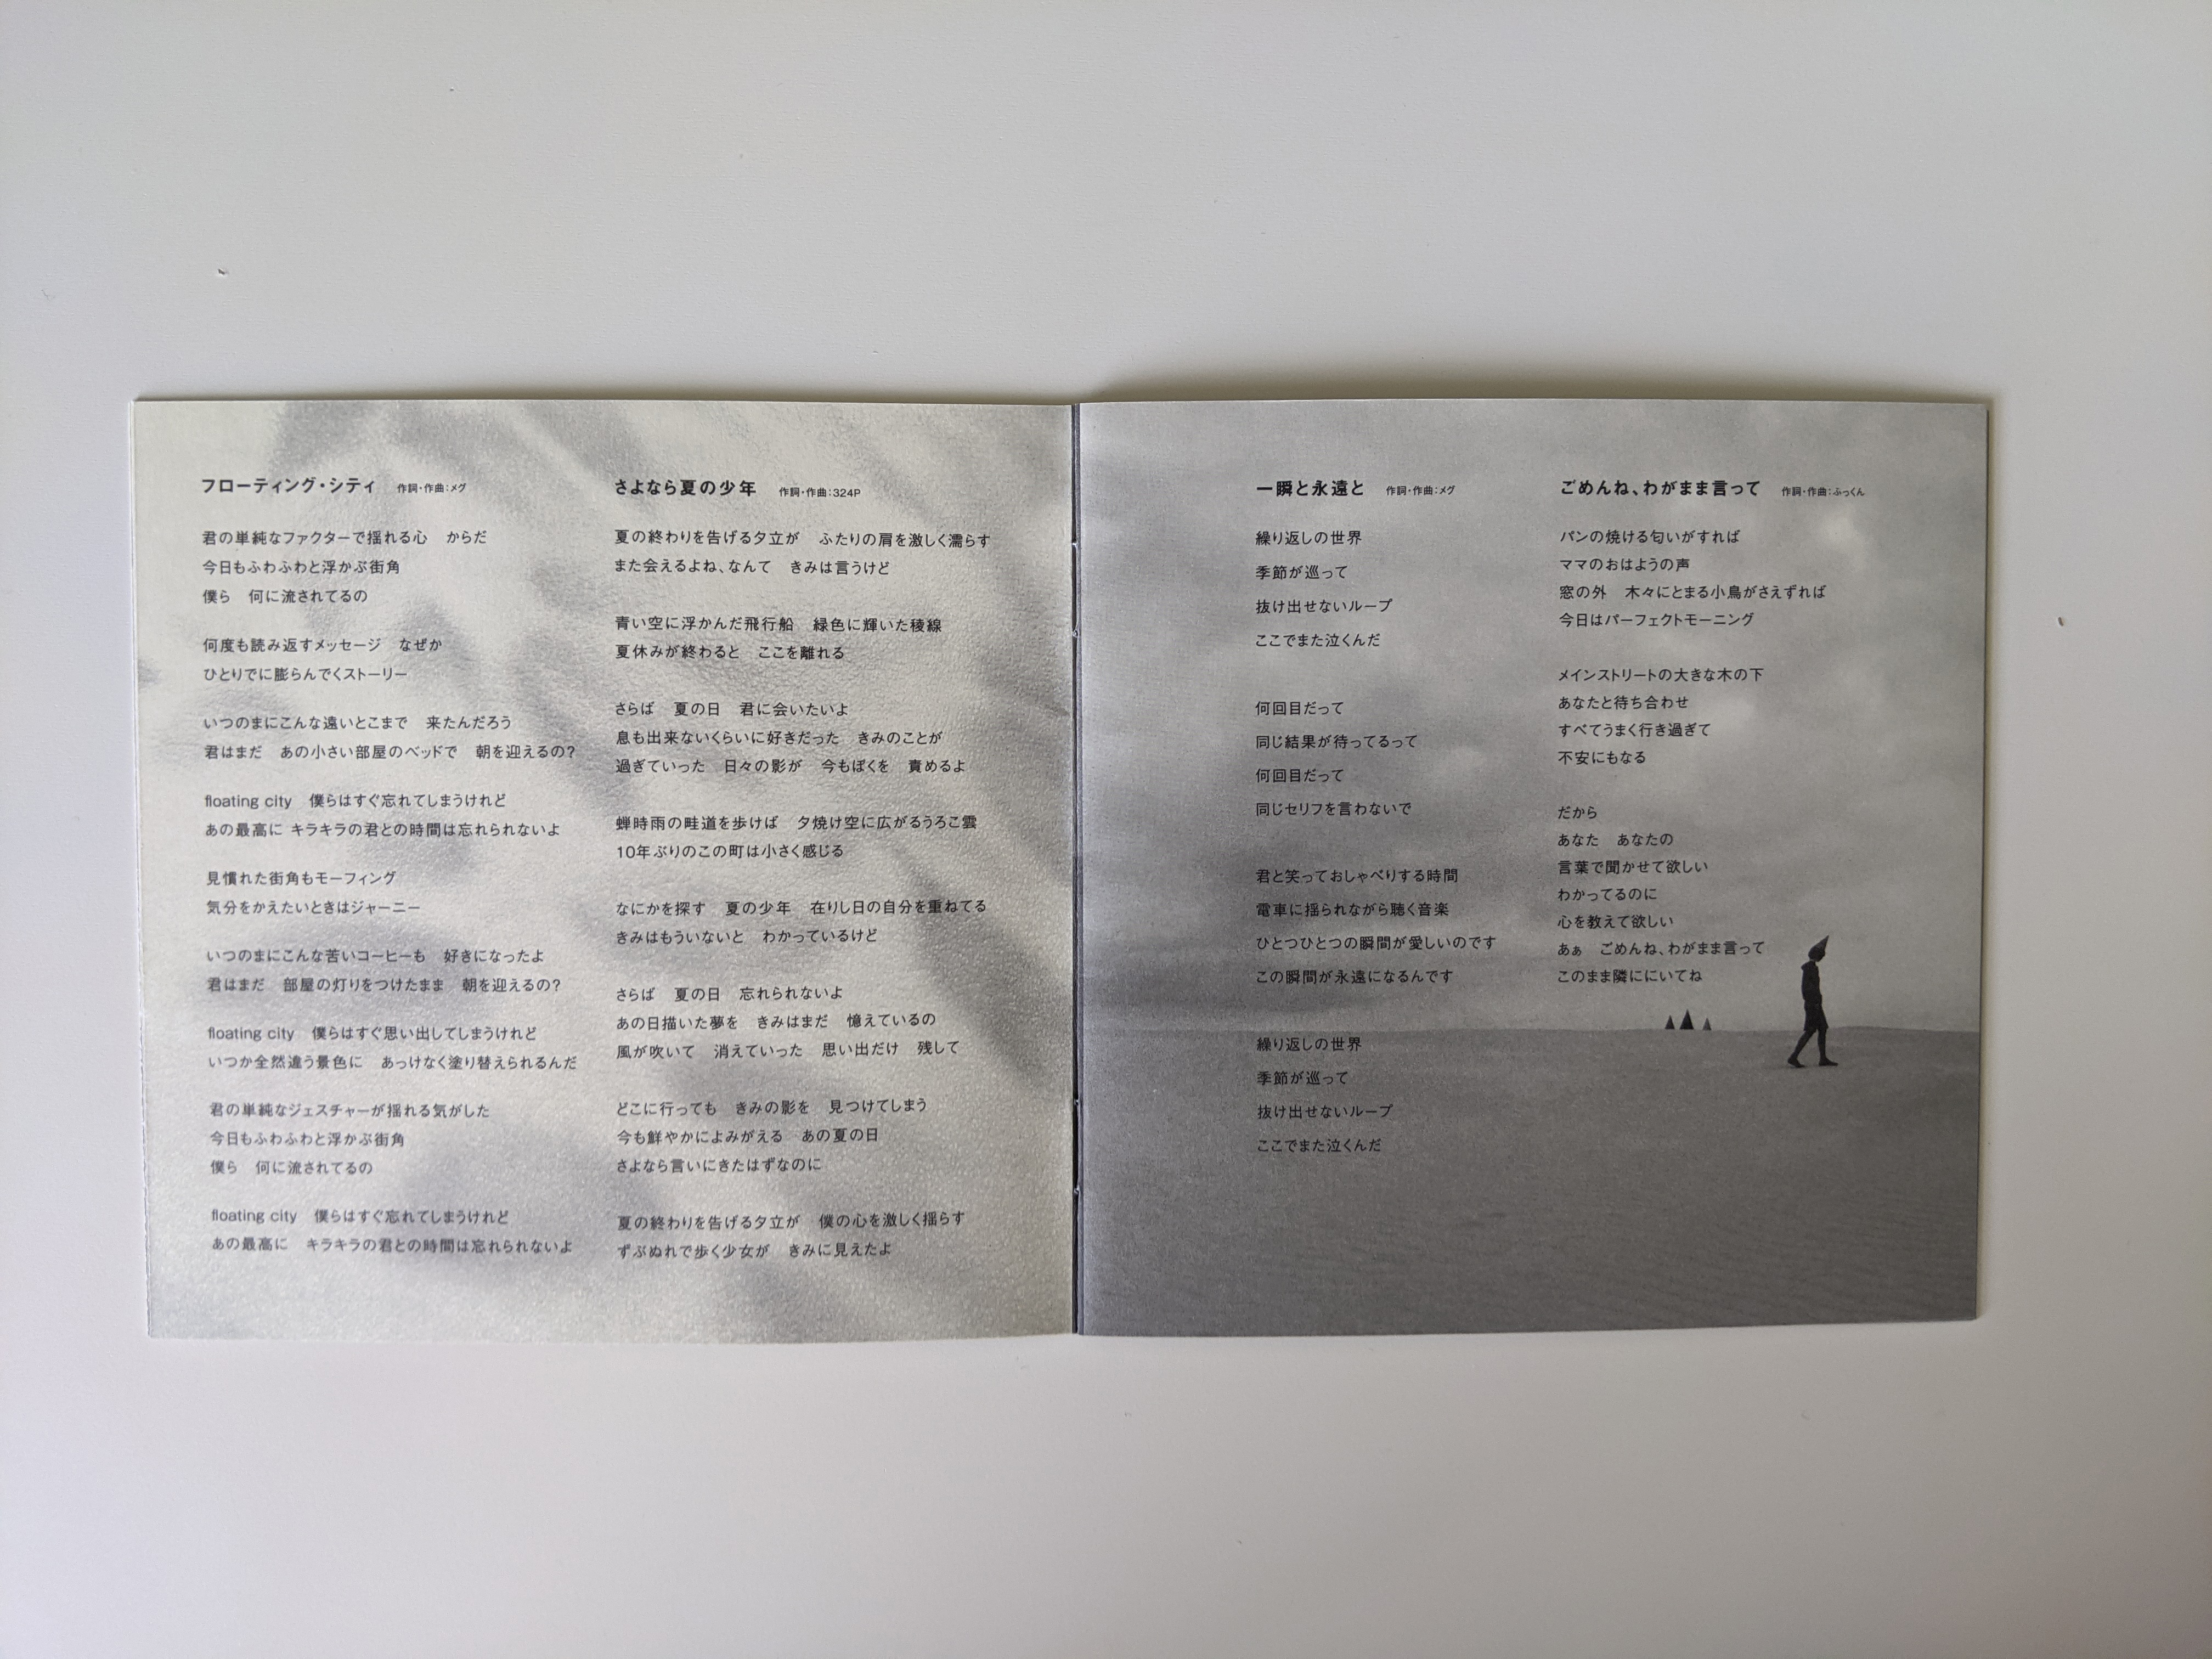 Kokoro Lyrics - It's All Me - Vol.1 - Only on JioSaavn